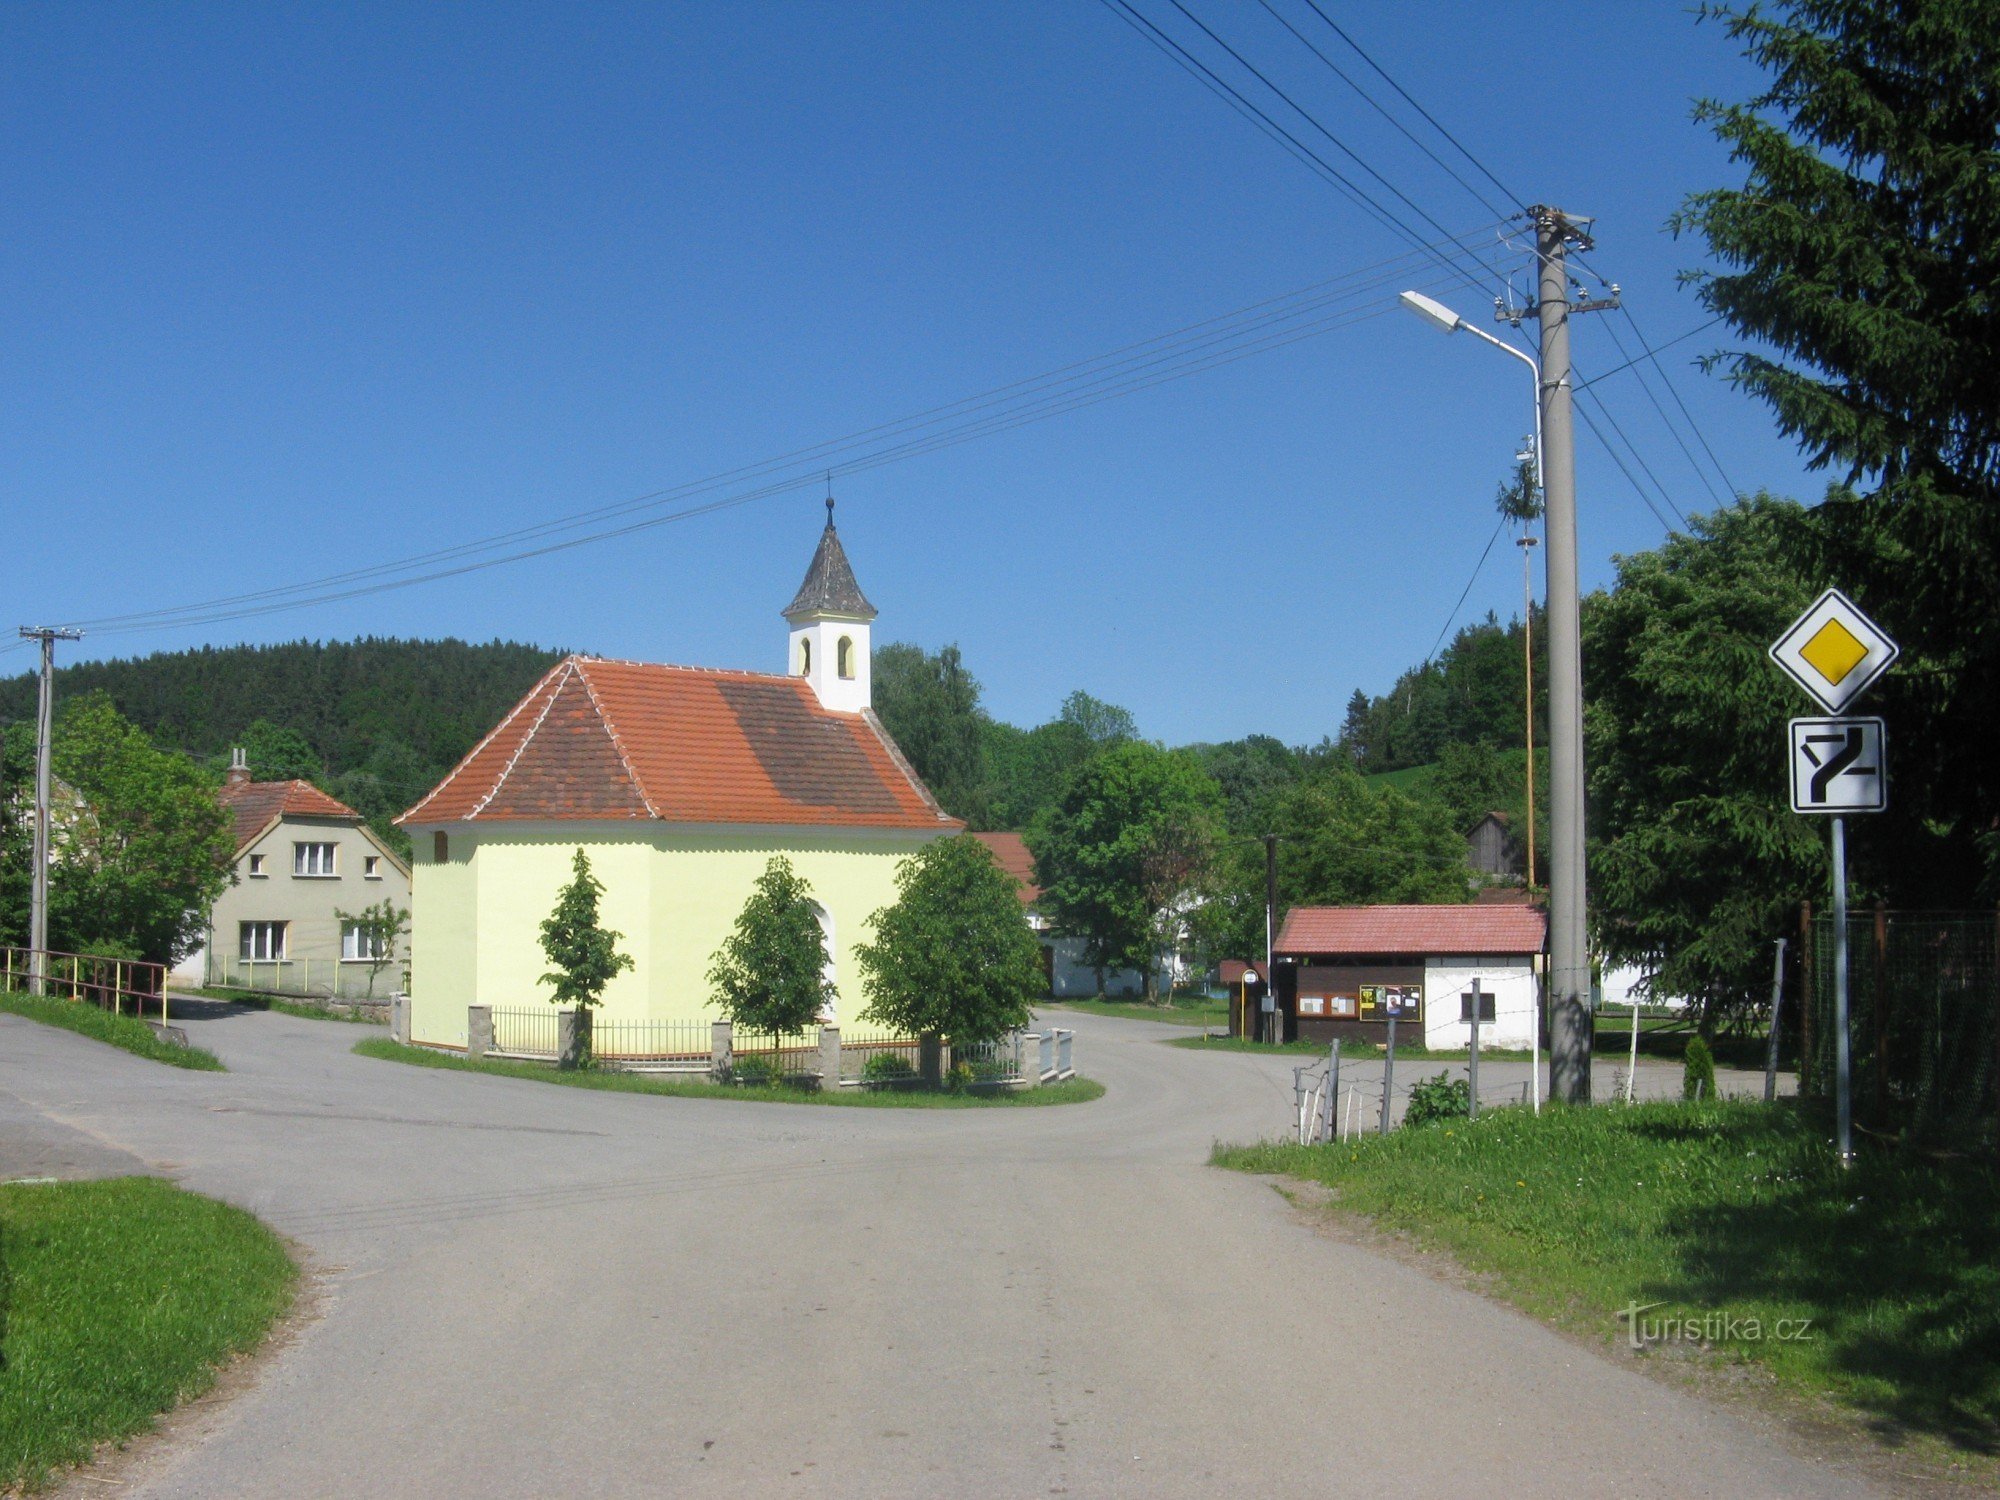 Kapel in het dorp